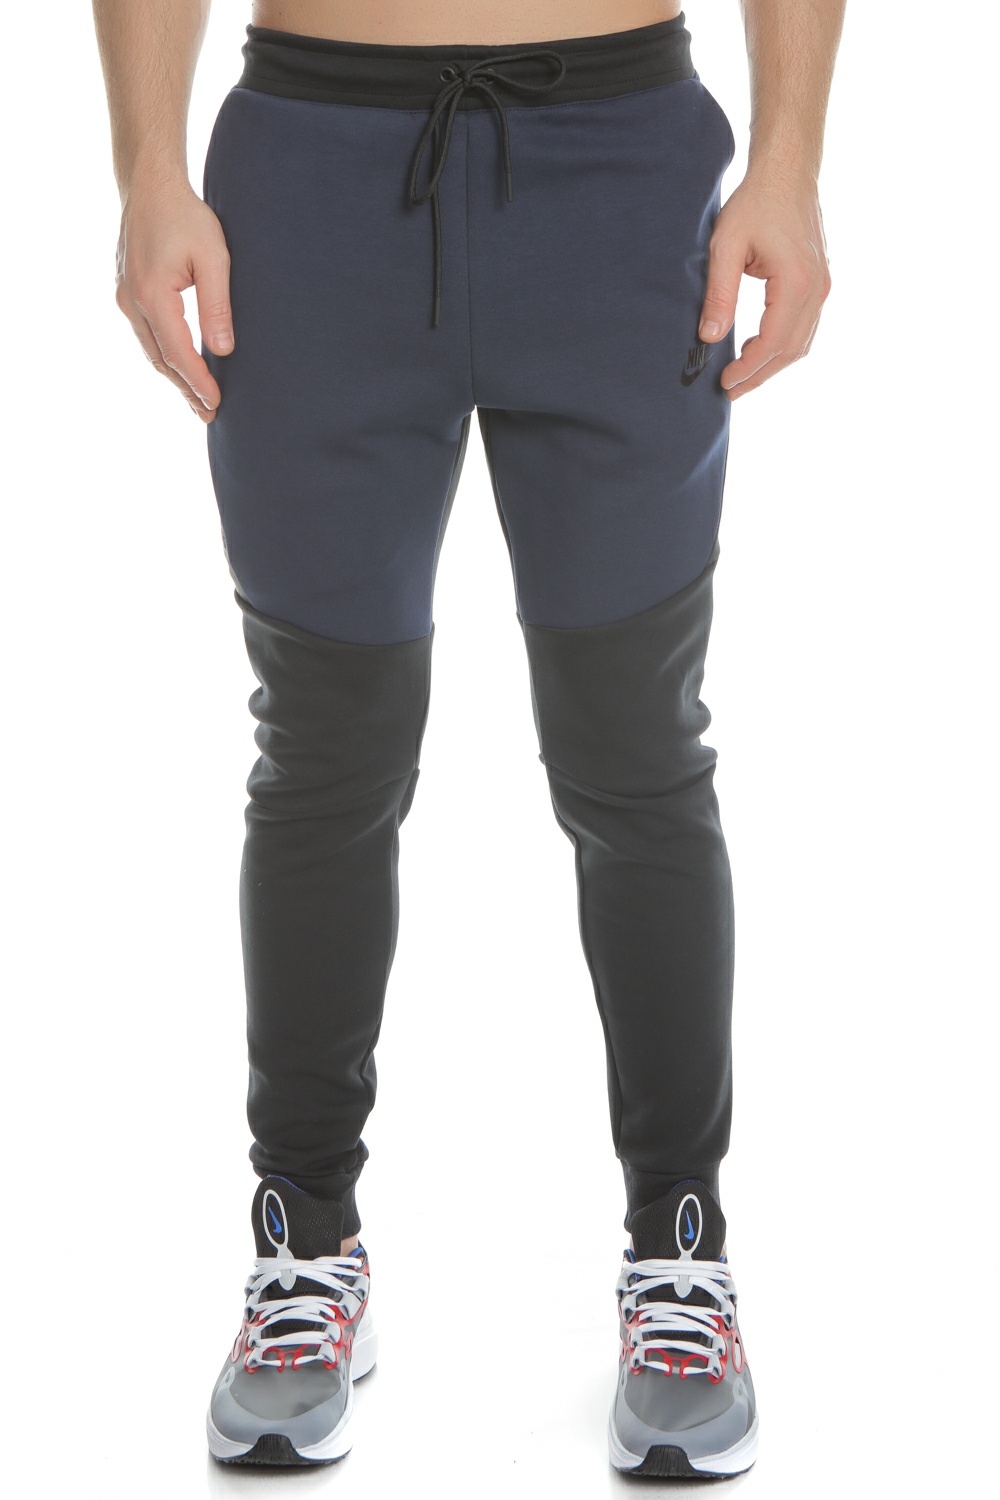 NIKE - Ανδρική φόρμα NIKE Sportswear Tech Fleece μπλε-μαύρο